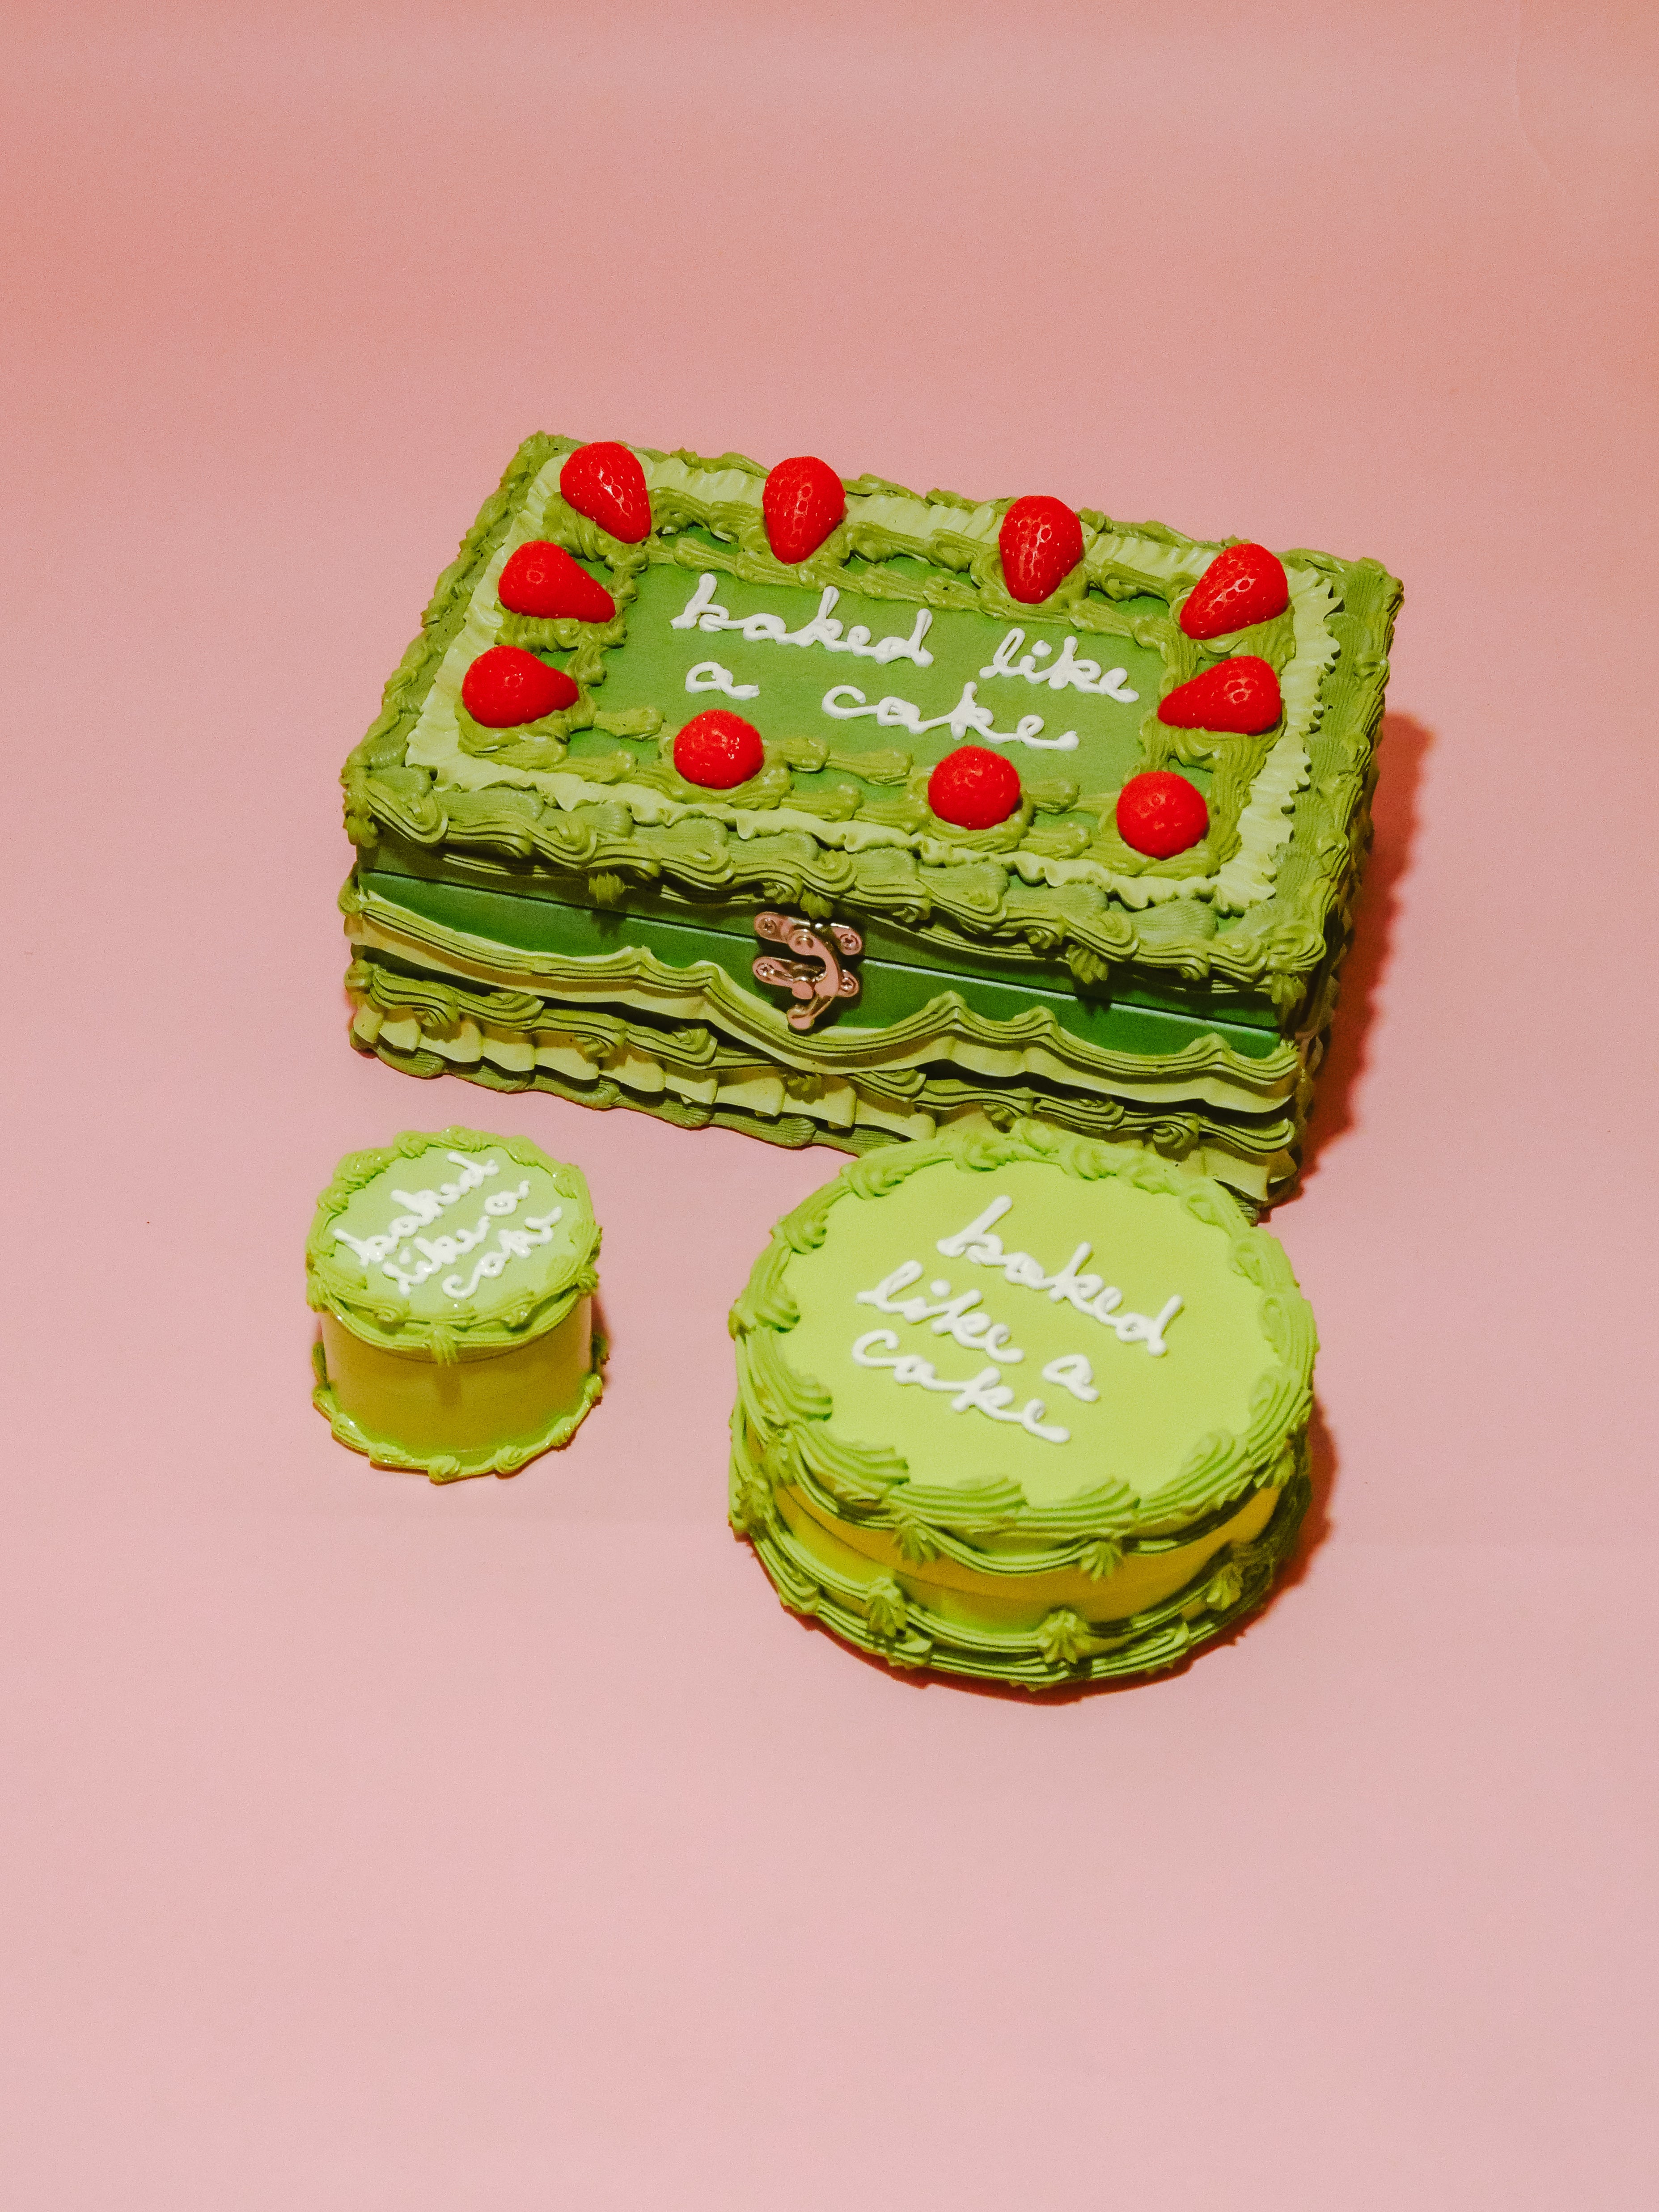 Green “Baked Like A Cake” Stash Box Set